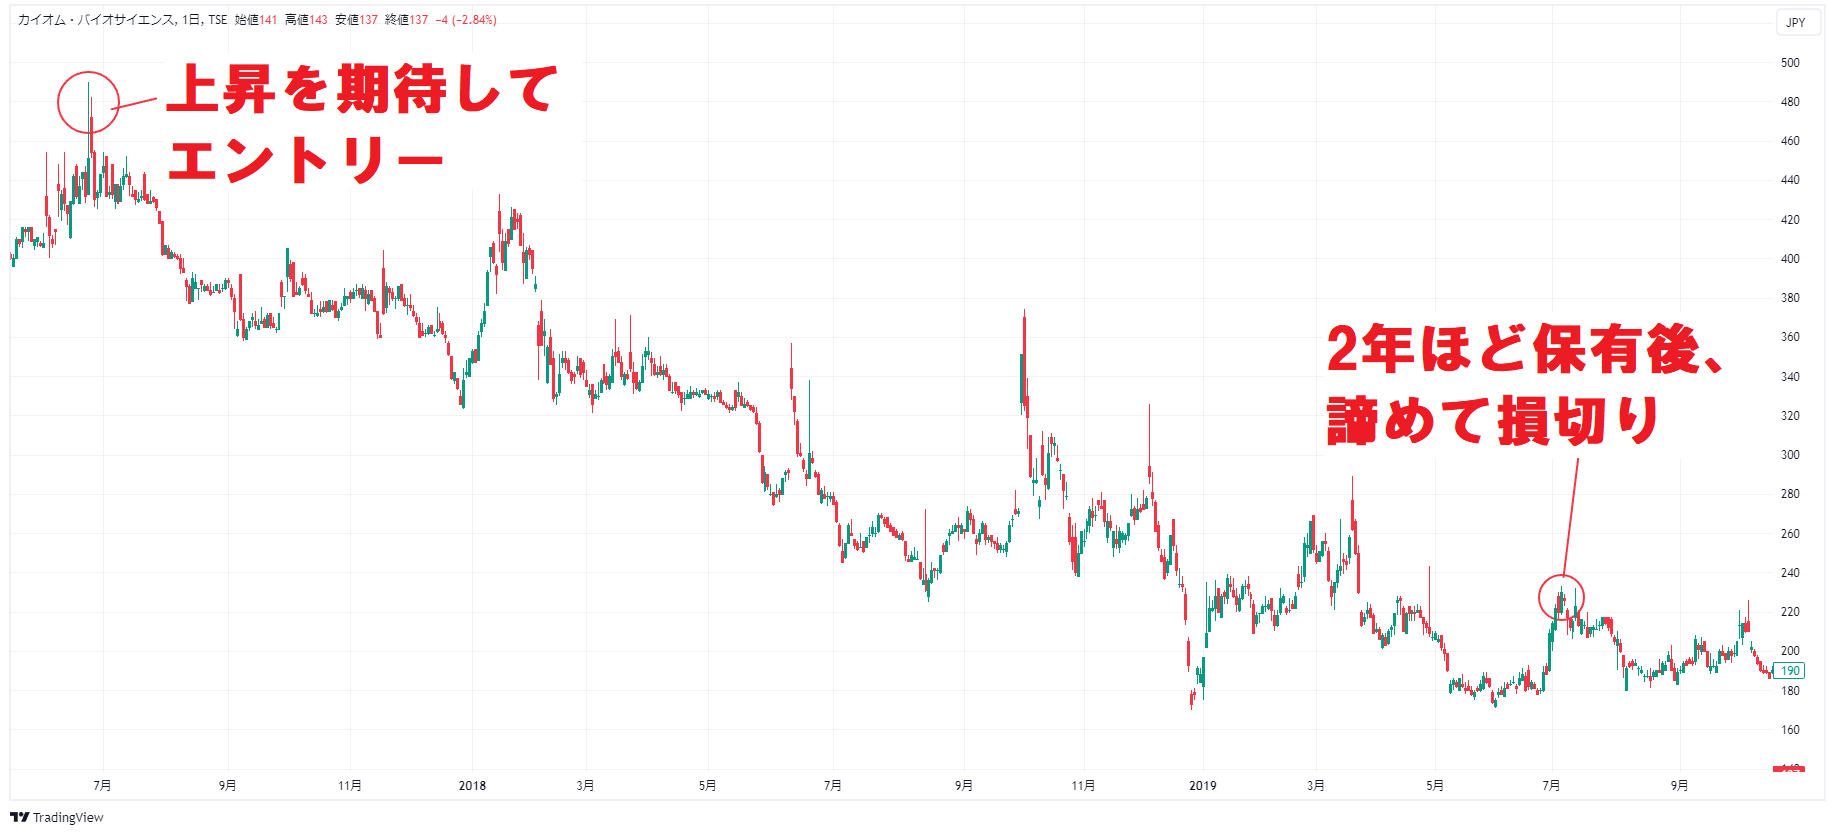 バイオ関連株の株価チャート